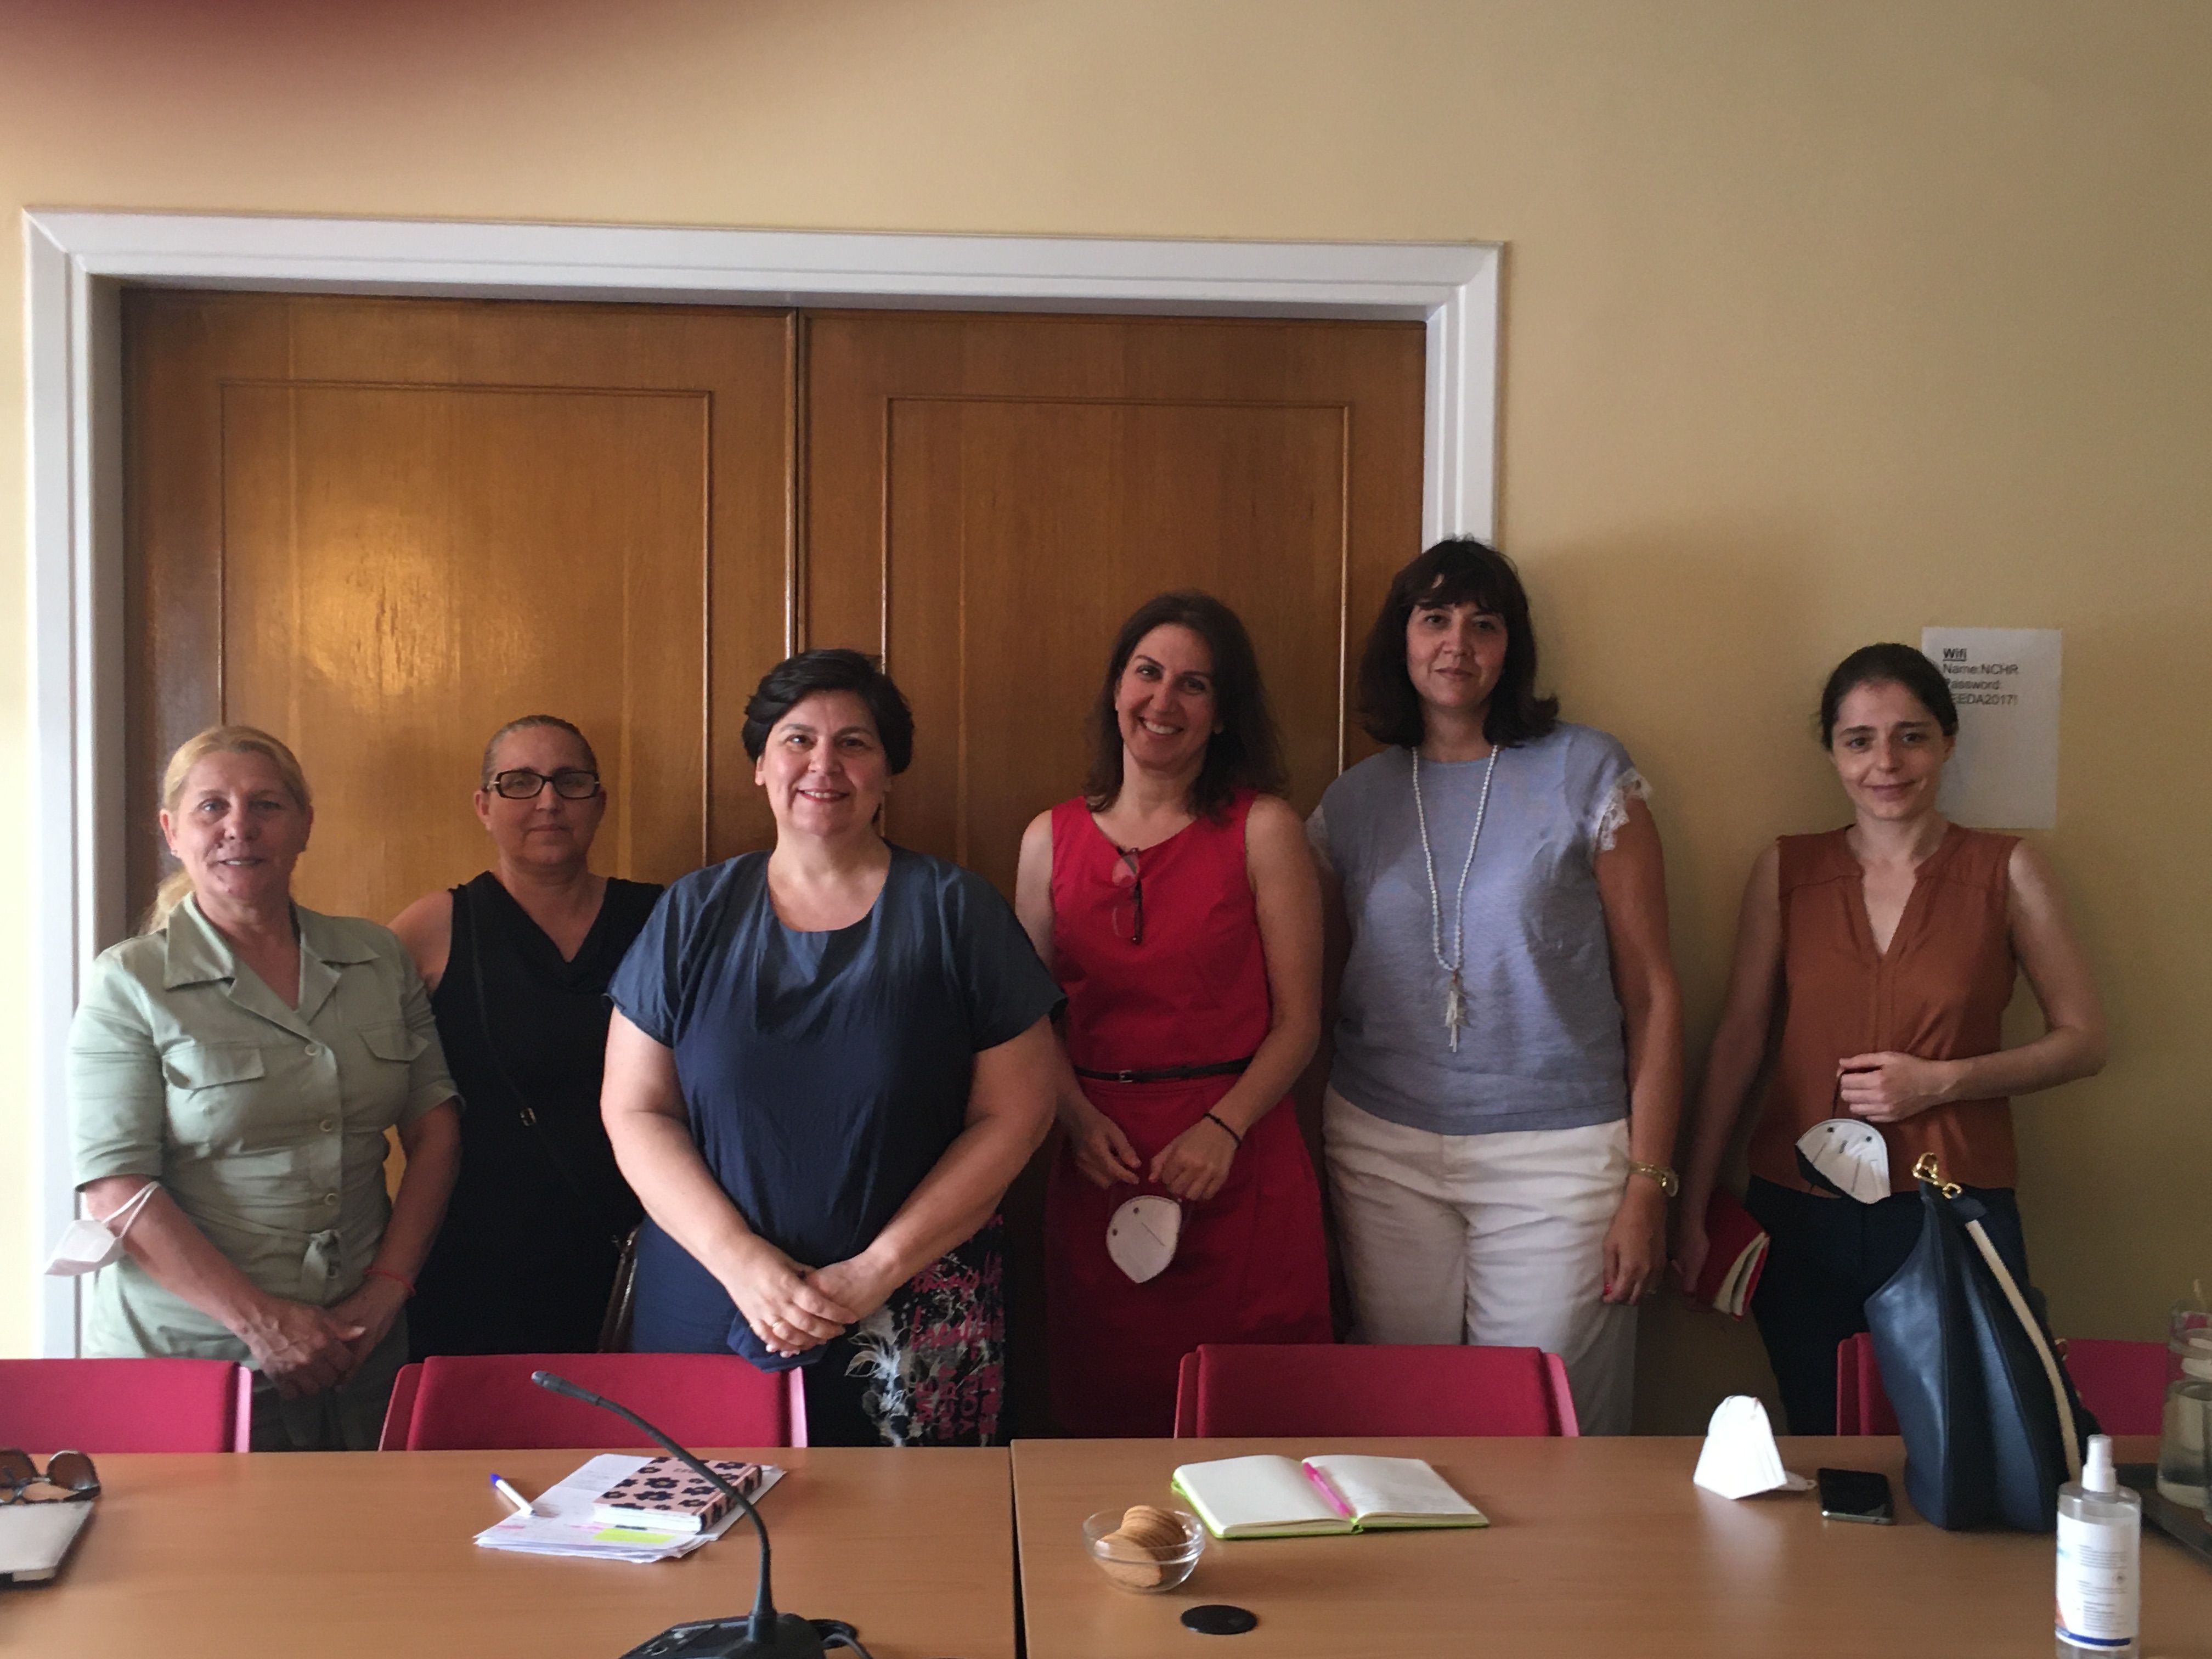 Φωτογραφία συνάντησης στα γραφεία της ΕΕΔΑ (από την ΕΕΔΑ οι κυρίες Γαβουνέλη, Τζαβαλά και Χαροκόπου και από το Σύλλογο Γυναικών Ρομά Δενδροποτάμου οι κυρίες Γ και Α.Μάγγα)